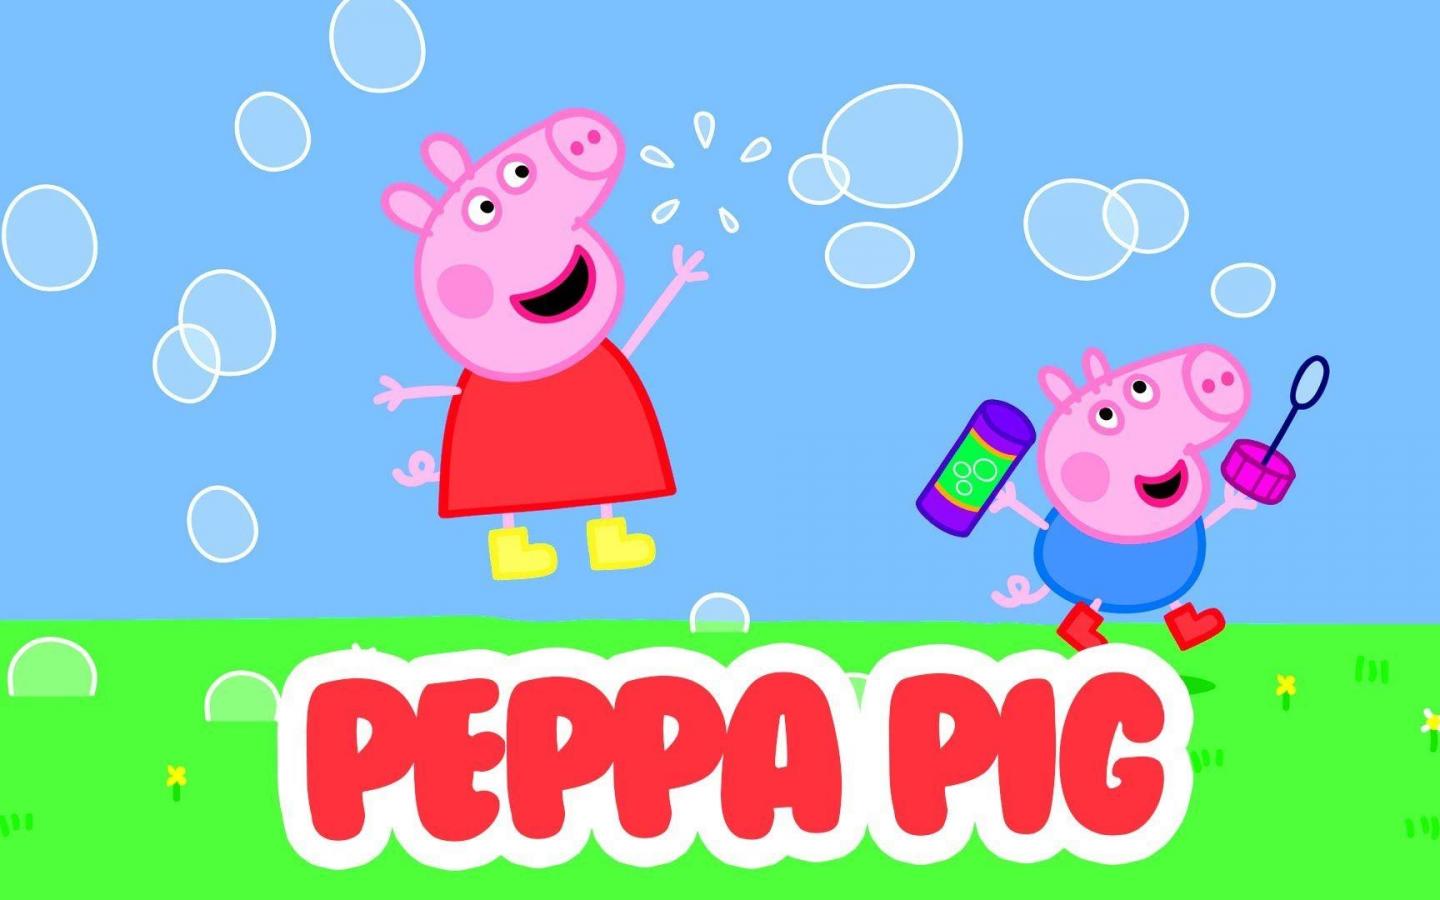 peppa pig fond d'écran hd,dessin animé,suidae,illustration,clipart,porc domestique